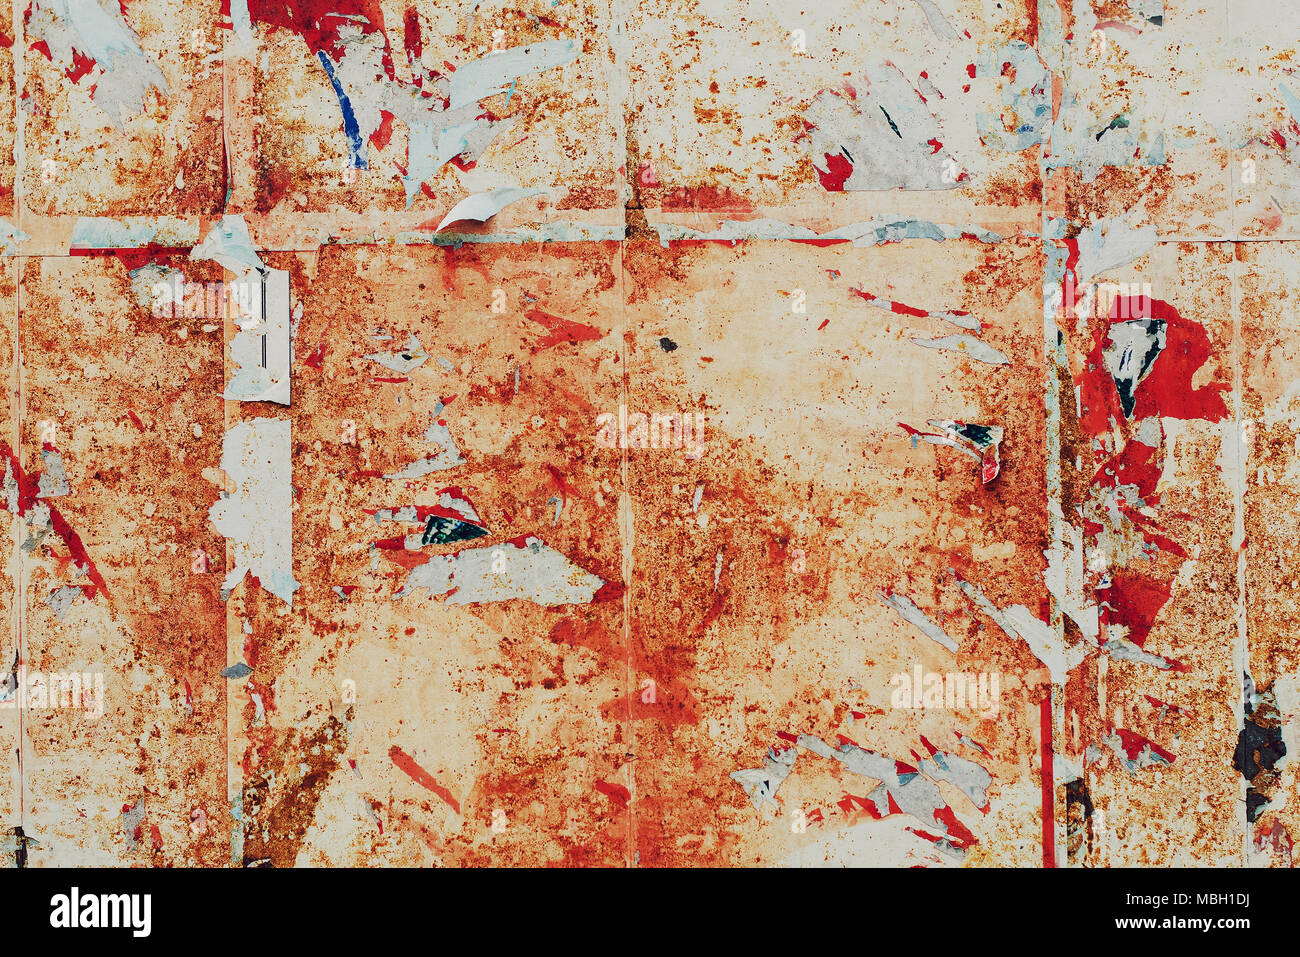 Déchiré Grunge texture papier d'affichage comme abstract background Banque D'Images